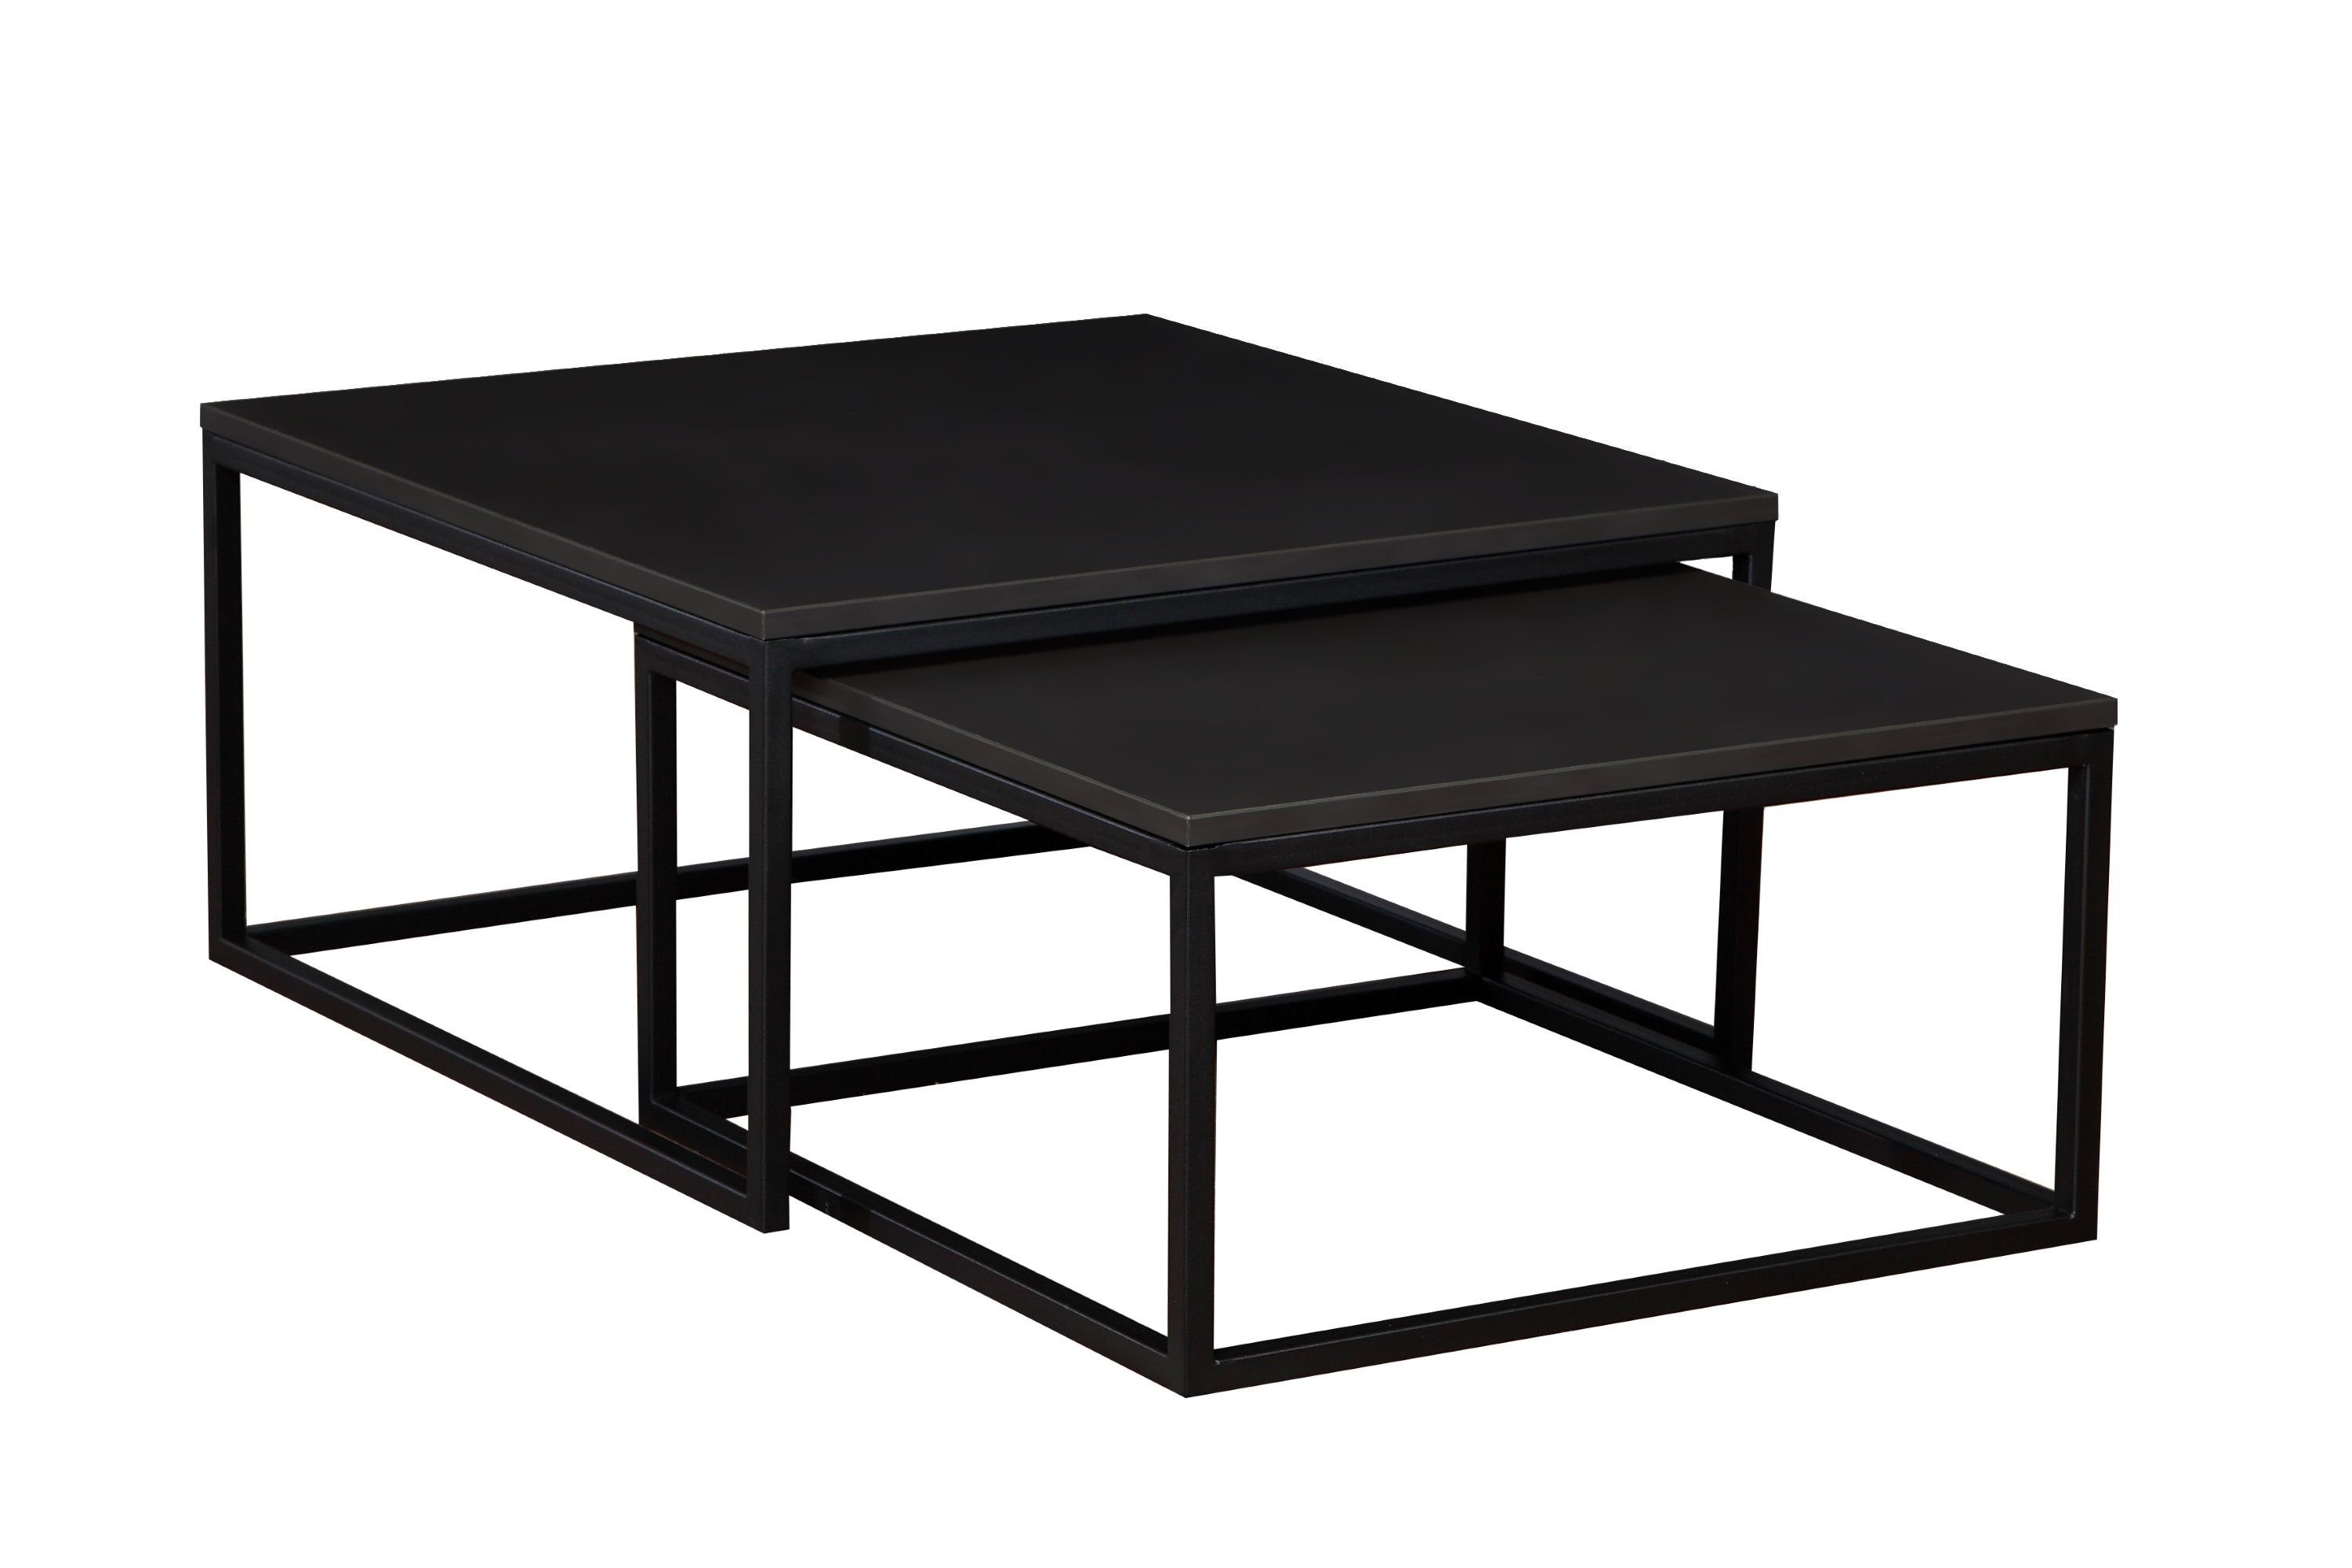 Couchtisch Tisch KAMPEN schwarz/schwarz hitzebeständige, Polini kratzfeste Couchtisch-Set Tischplatte, Laminierte stoß- und schwarz, 2-teilig Home